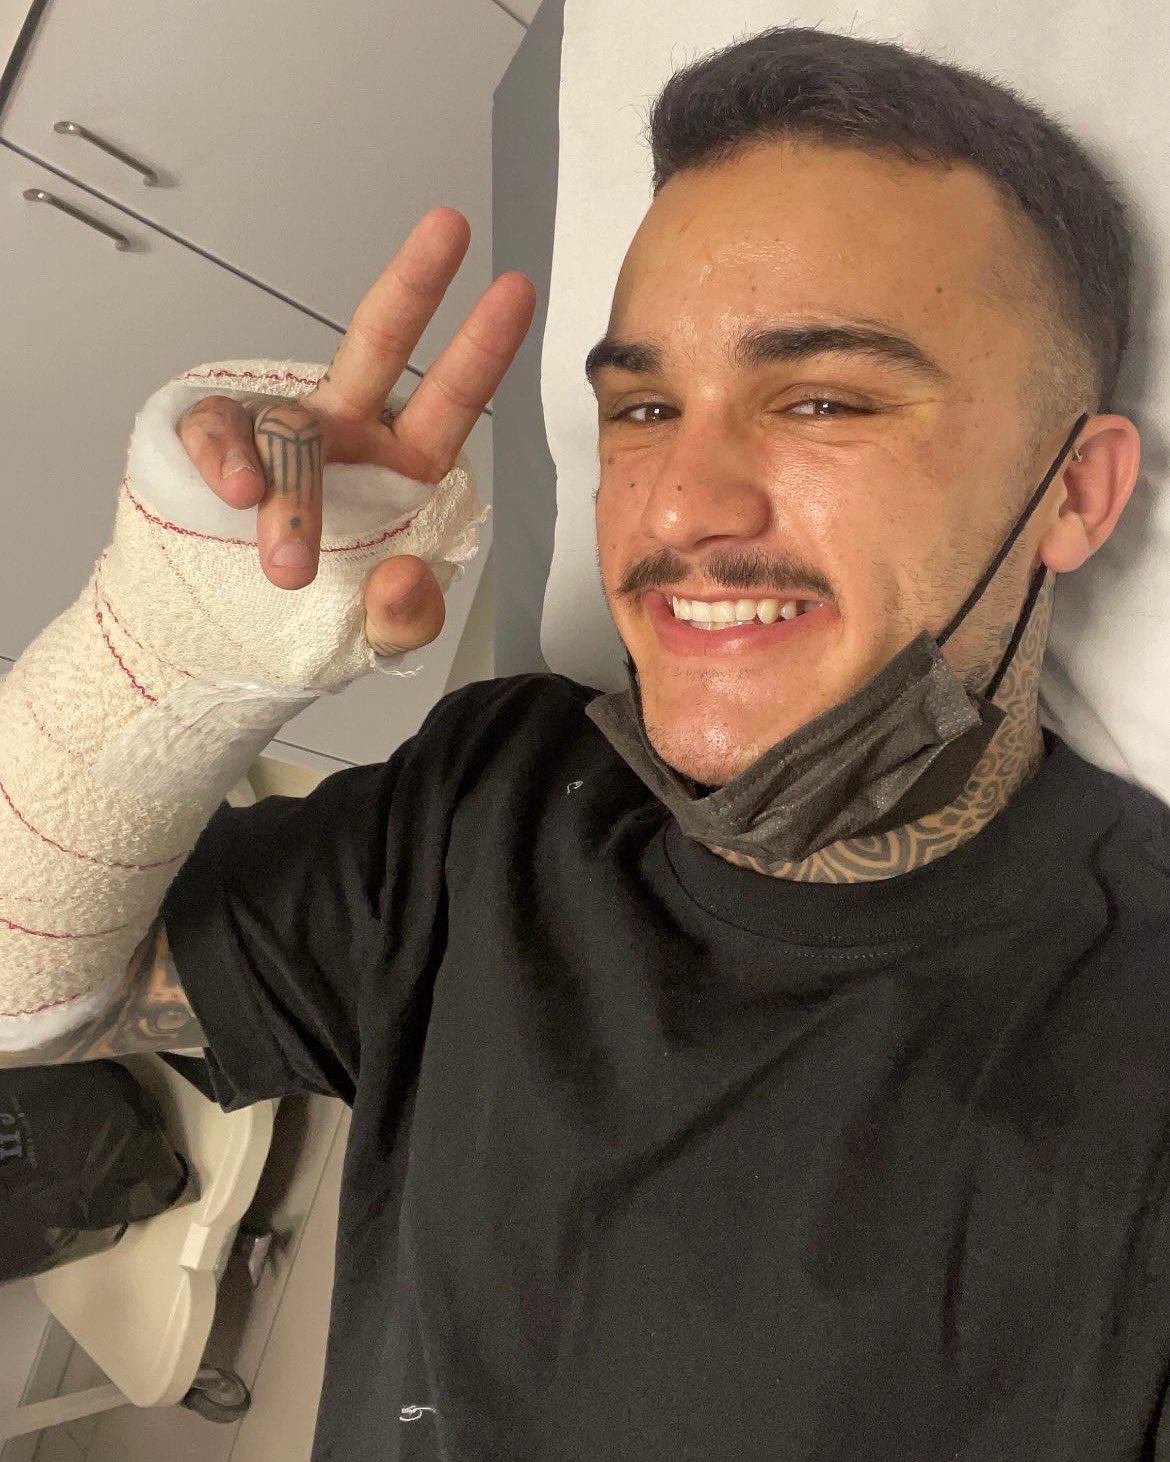 Арон Канет сломал лучевую кость правой руки в массовом завале на Гран-При Португалии